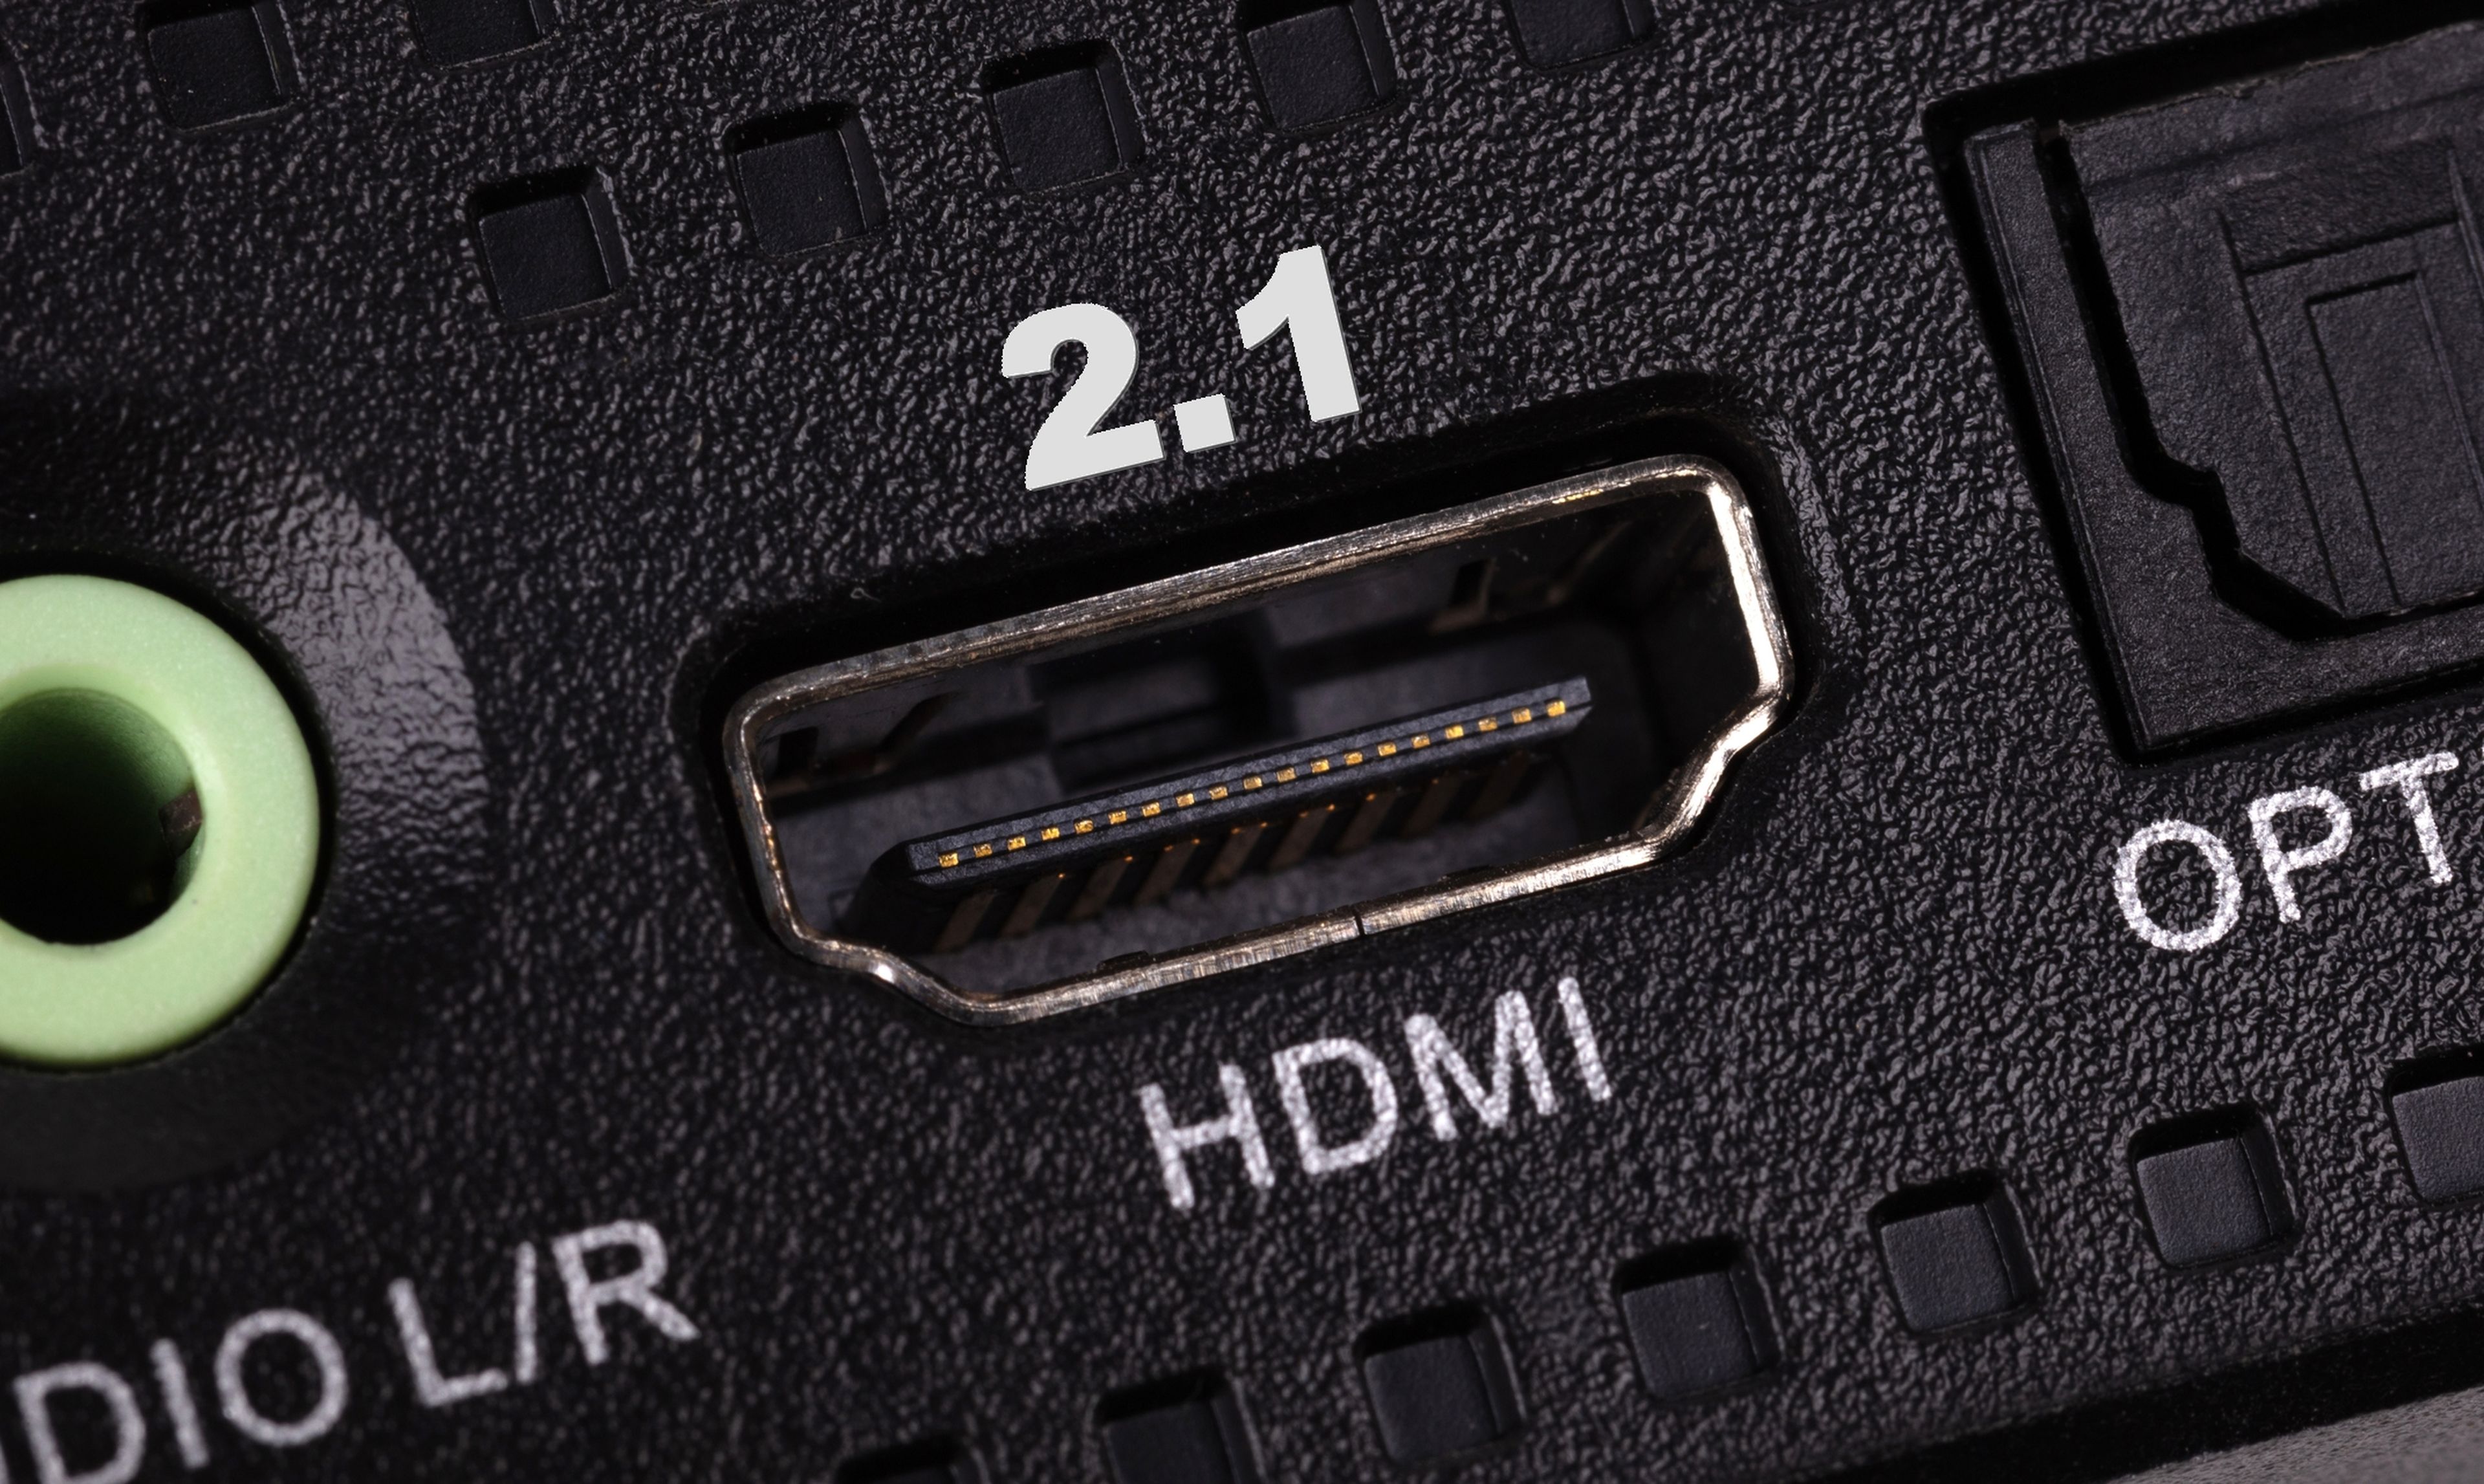 Conector HDMi en el TV imagen de archivo. Imagen de monitor - 197948285